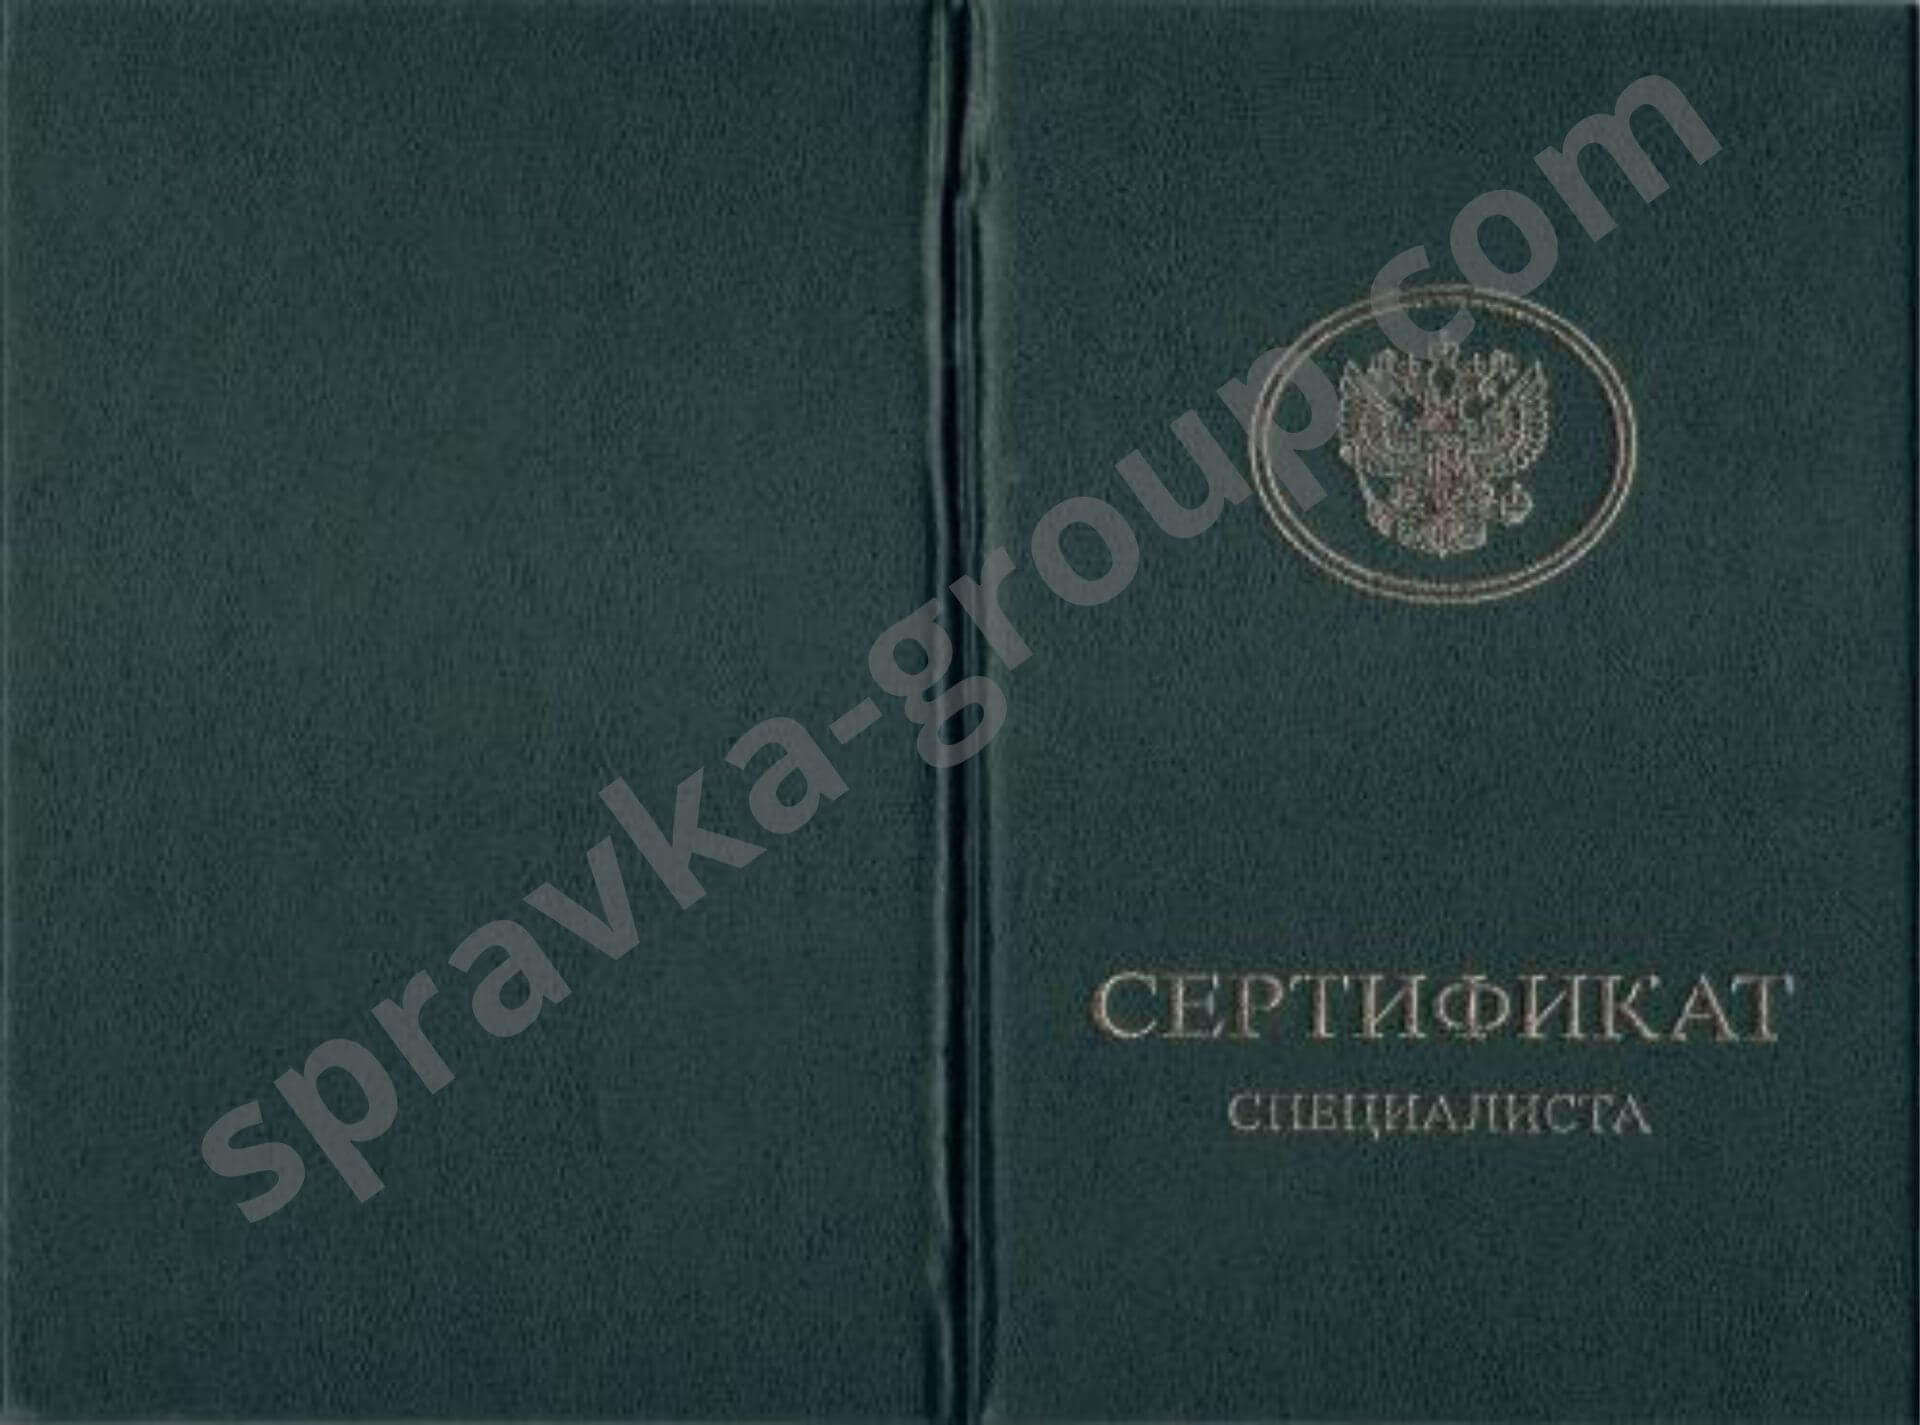 Купить медицинский сертификат в Москве, фото №3